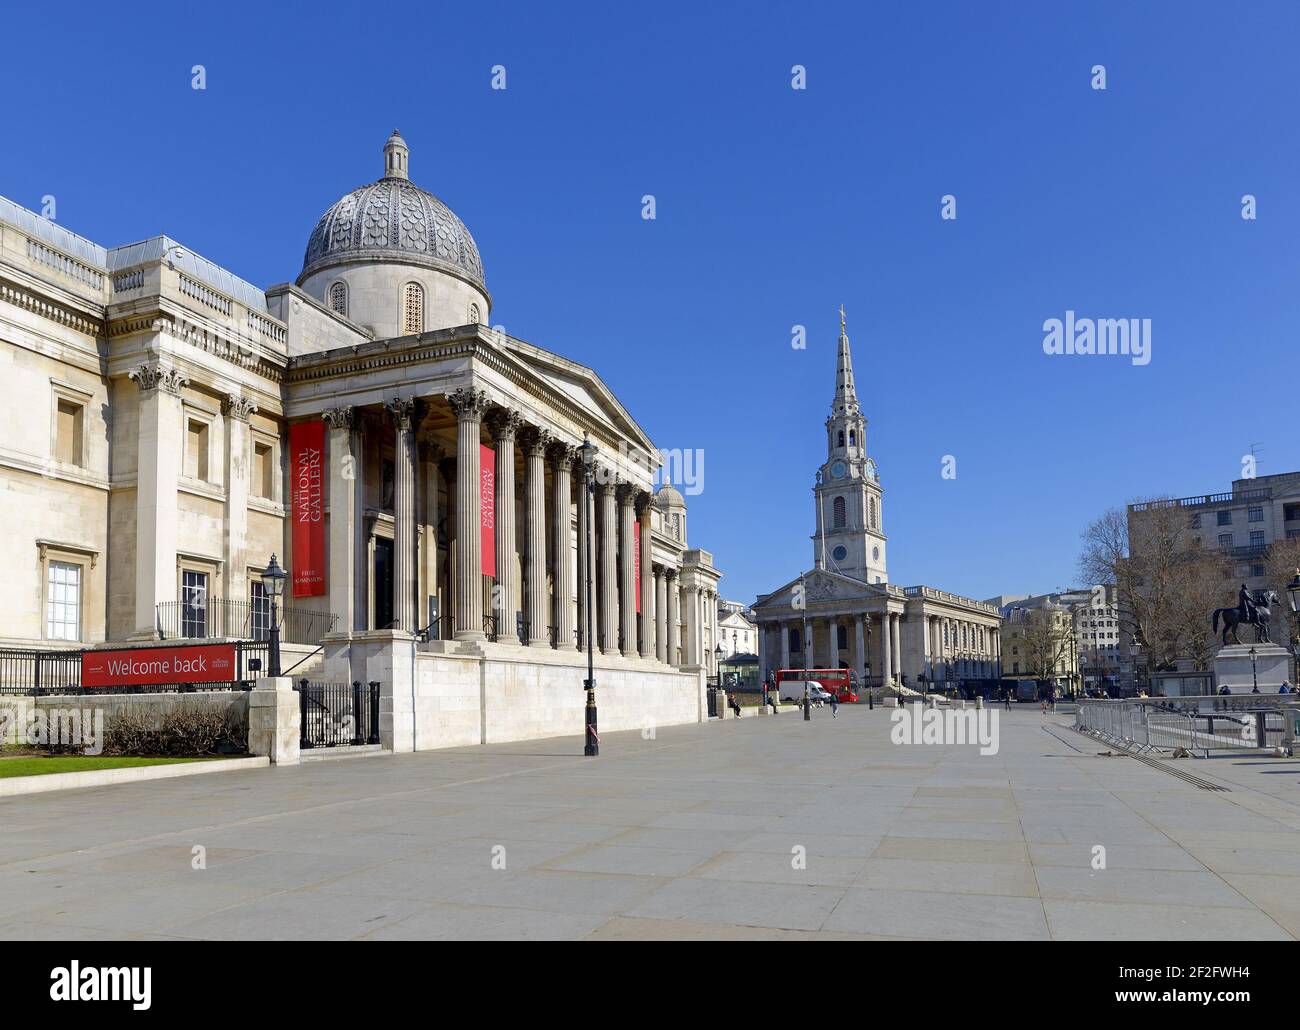 Londra, Inghilterra, Regno Unito. Trafalgar Square - Galleria Nazionale e la chiesa di San Martino nei campi durante il blocco COVID, marzo 2021 Foto Stock